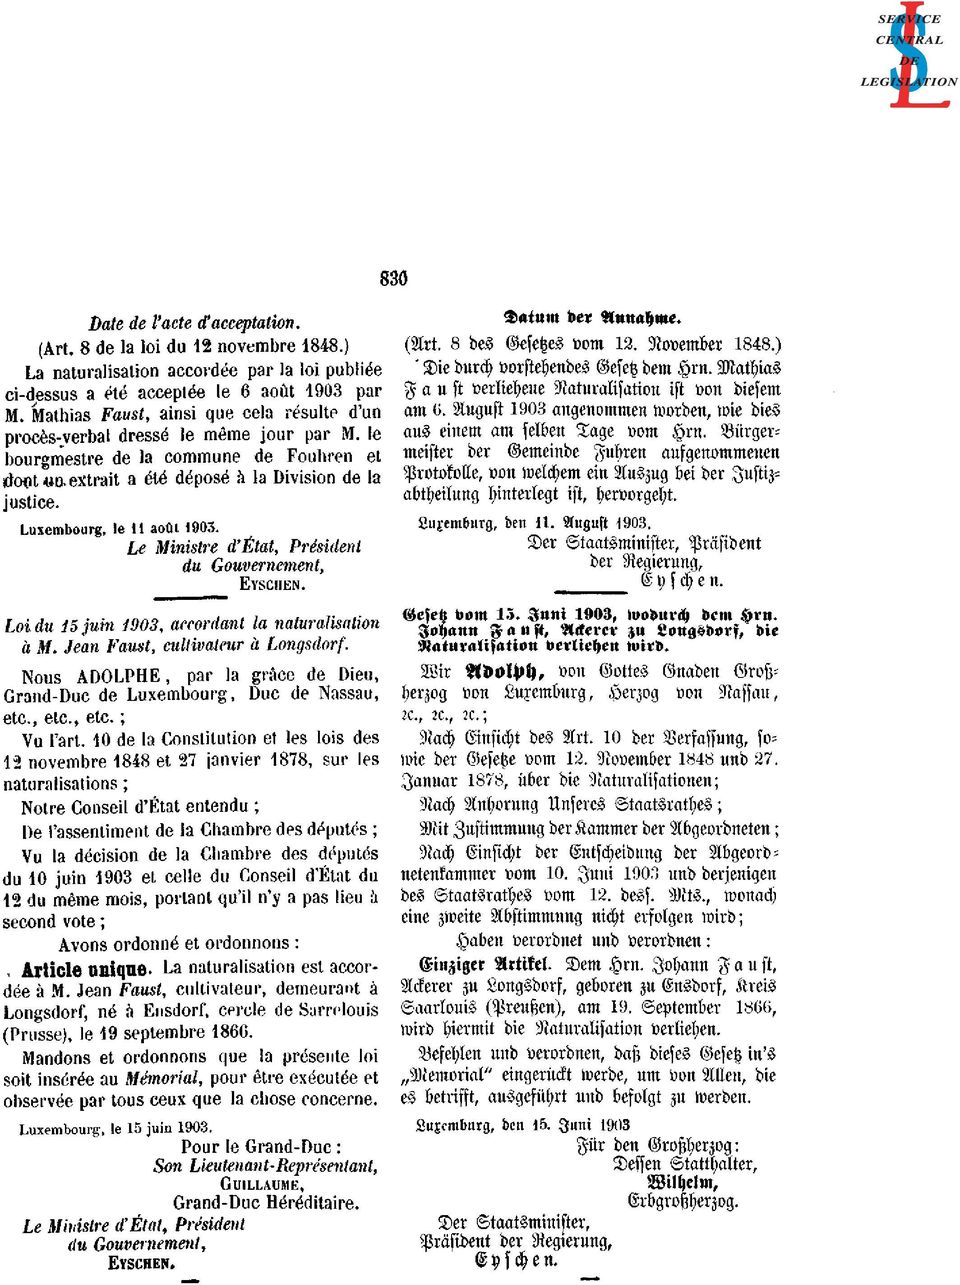 Luxembourg, le 11 août 1903. Le Ministre d'état, Président du Gouvernement, EYSCHEN. Loi du 15 juin 1903, accordant la naturalisation à M. Jean Faust, cultivateur à Longsdorf.